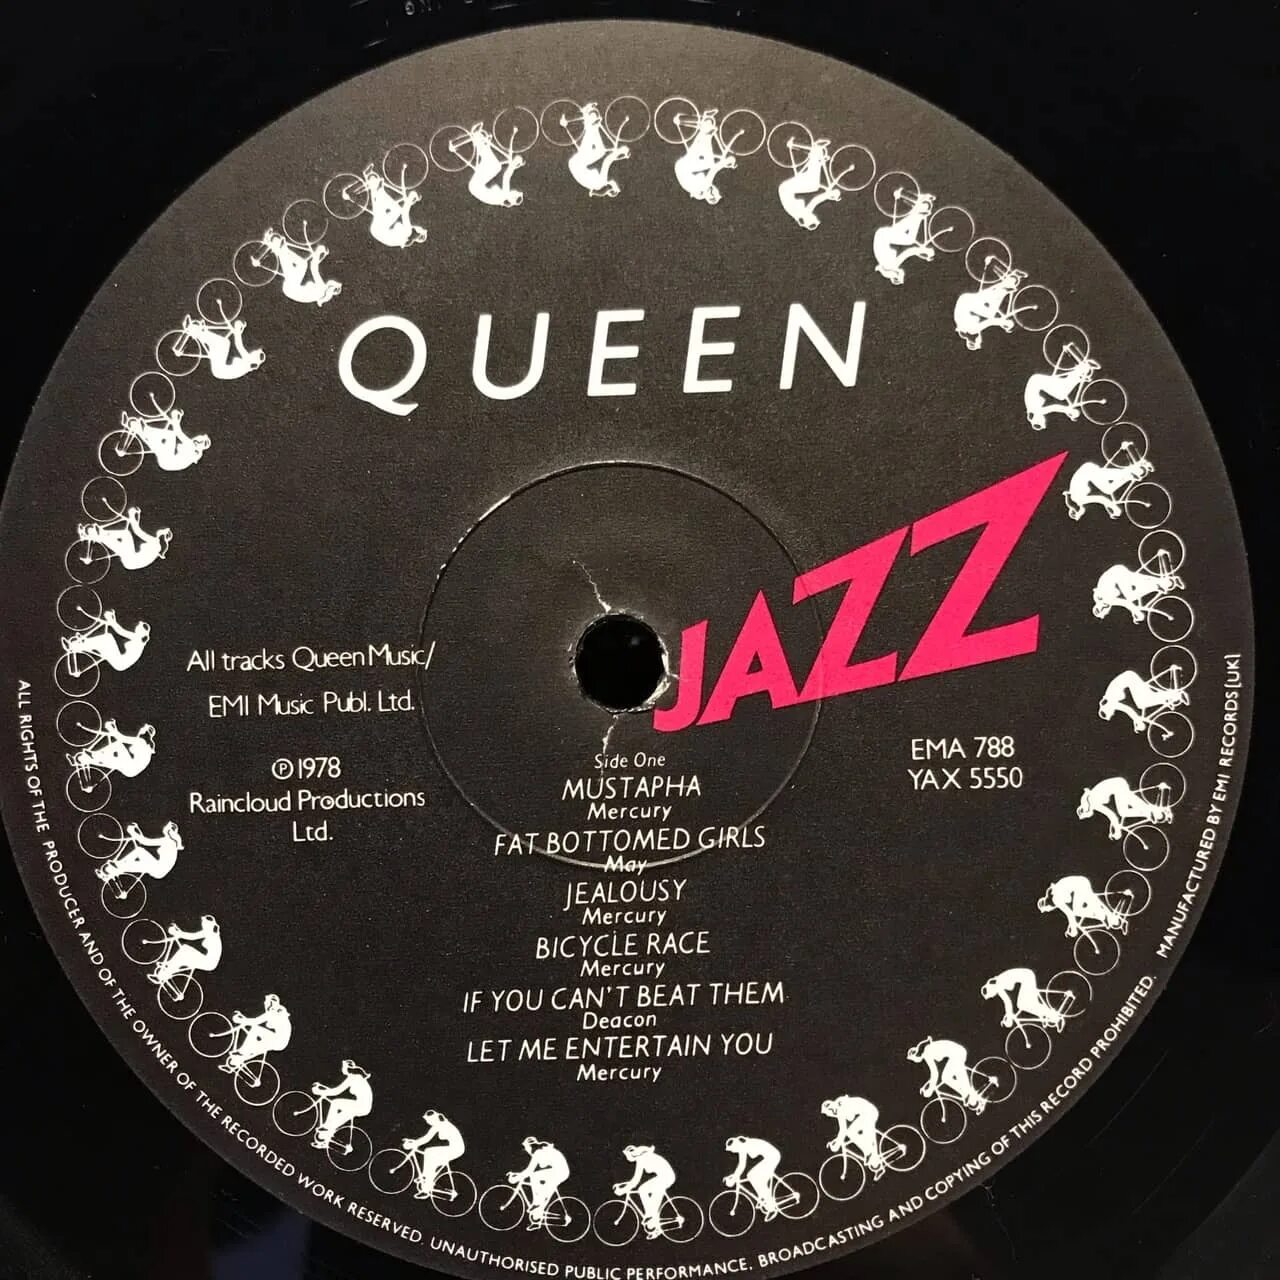 Queen Jazz 1978 винил. Queen Jazz 1978 Постер. Американское издание пластинки Queen-Jazz. Виниловые пластинки Квин.